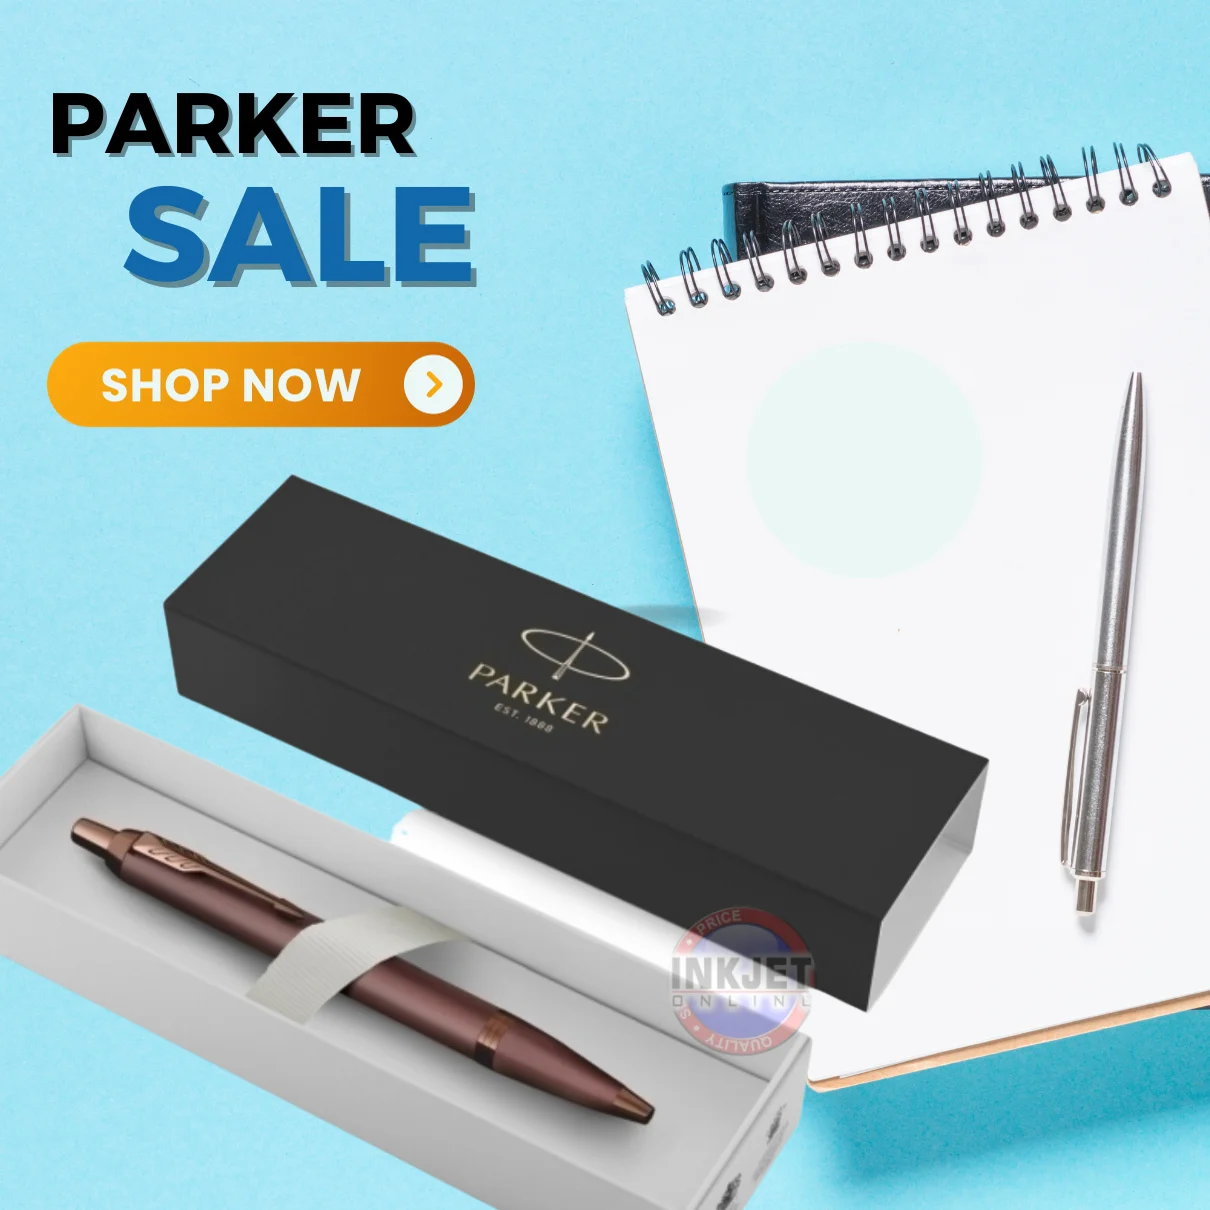 Parker Sale at Inkjet Online